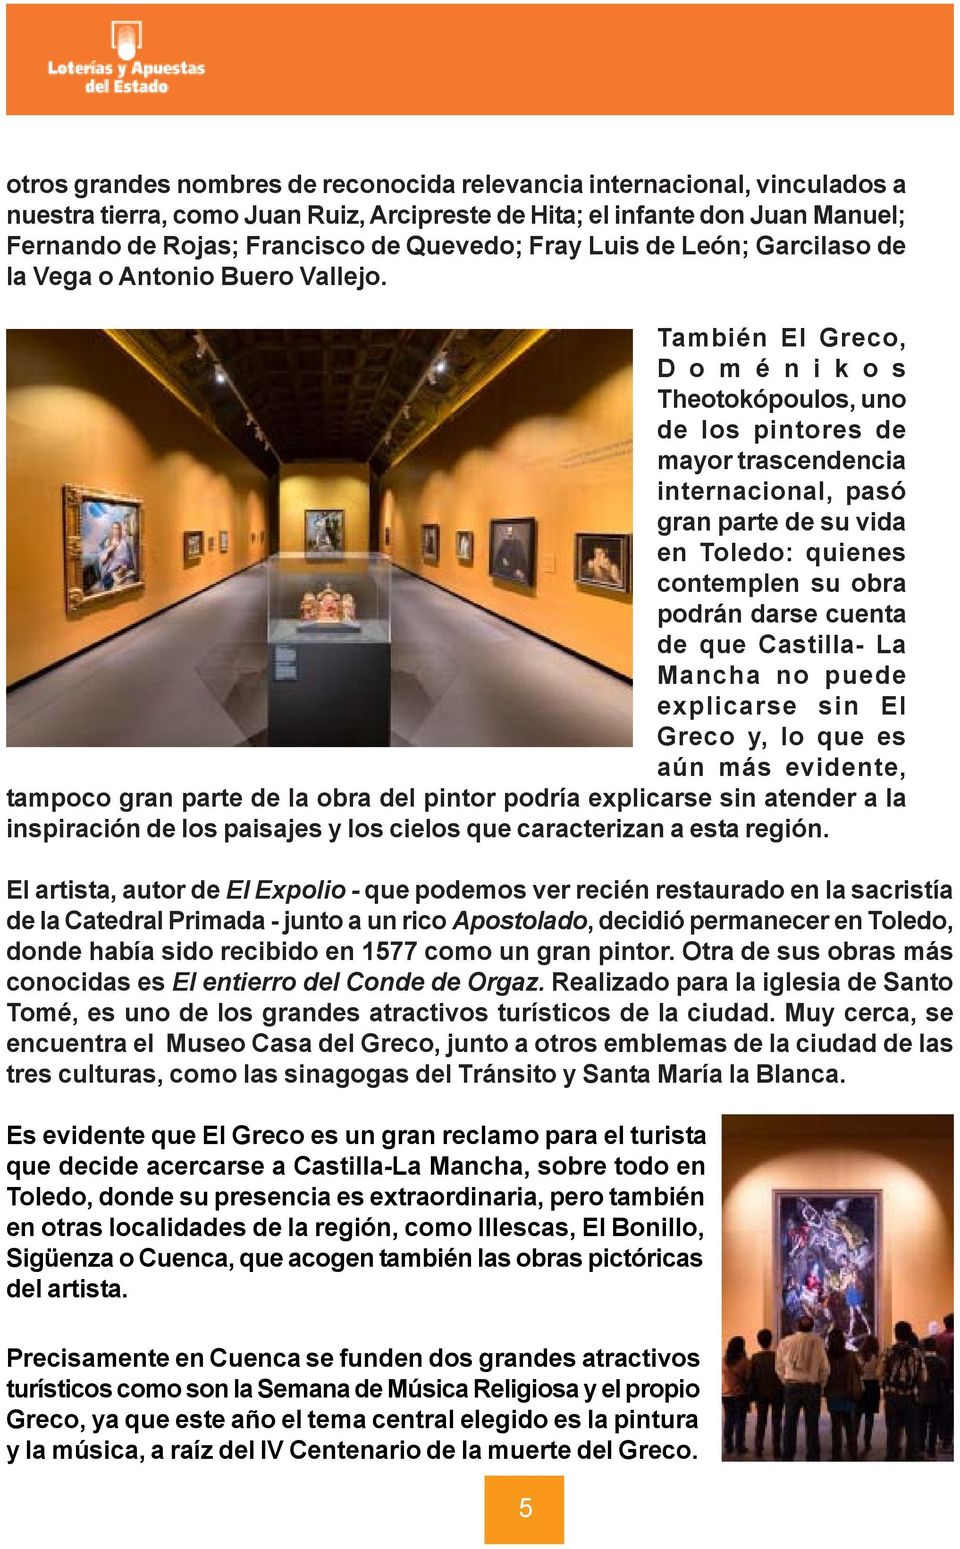 También El Greco, D o m é n i k o s Theotokópoulos, uno de los pintores de mayor trascendencia internacional, pasó gran parte de su vida en Toledo: quienes contemplen su obra podrán darse cuenta de